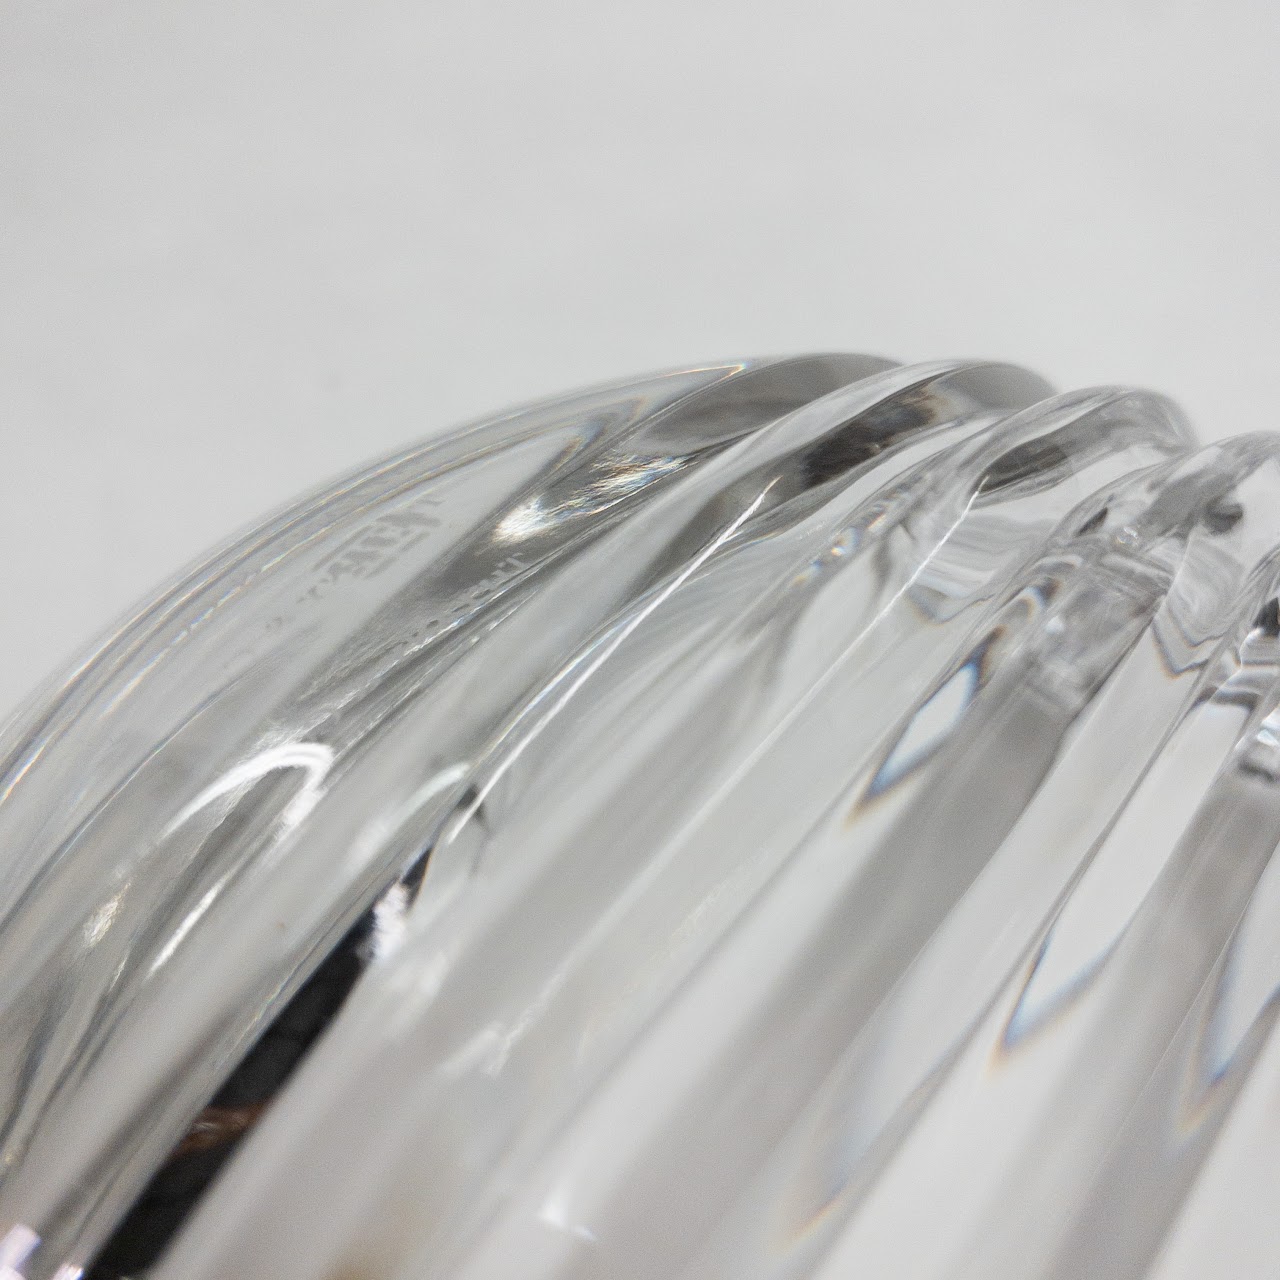 Tiffany & Co x Josef Riedel Crystal Bowl